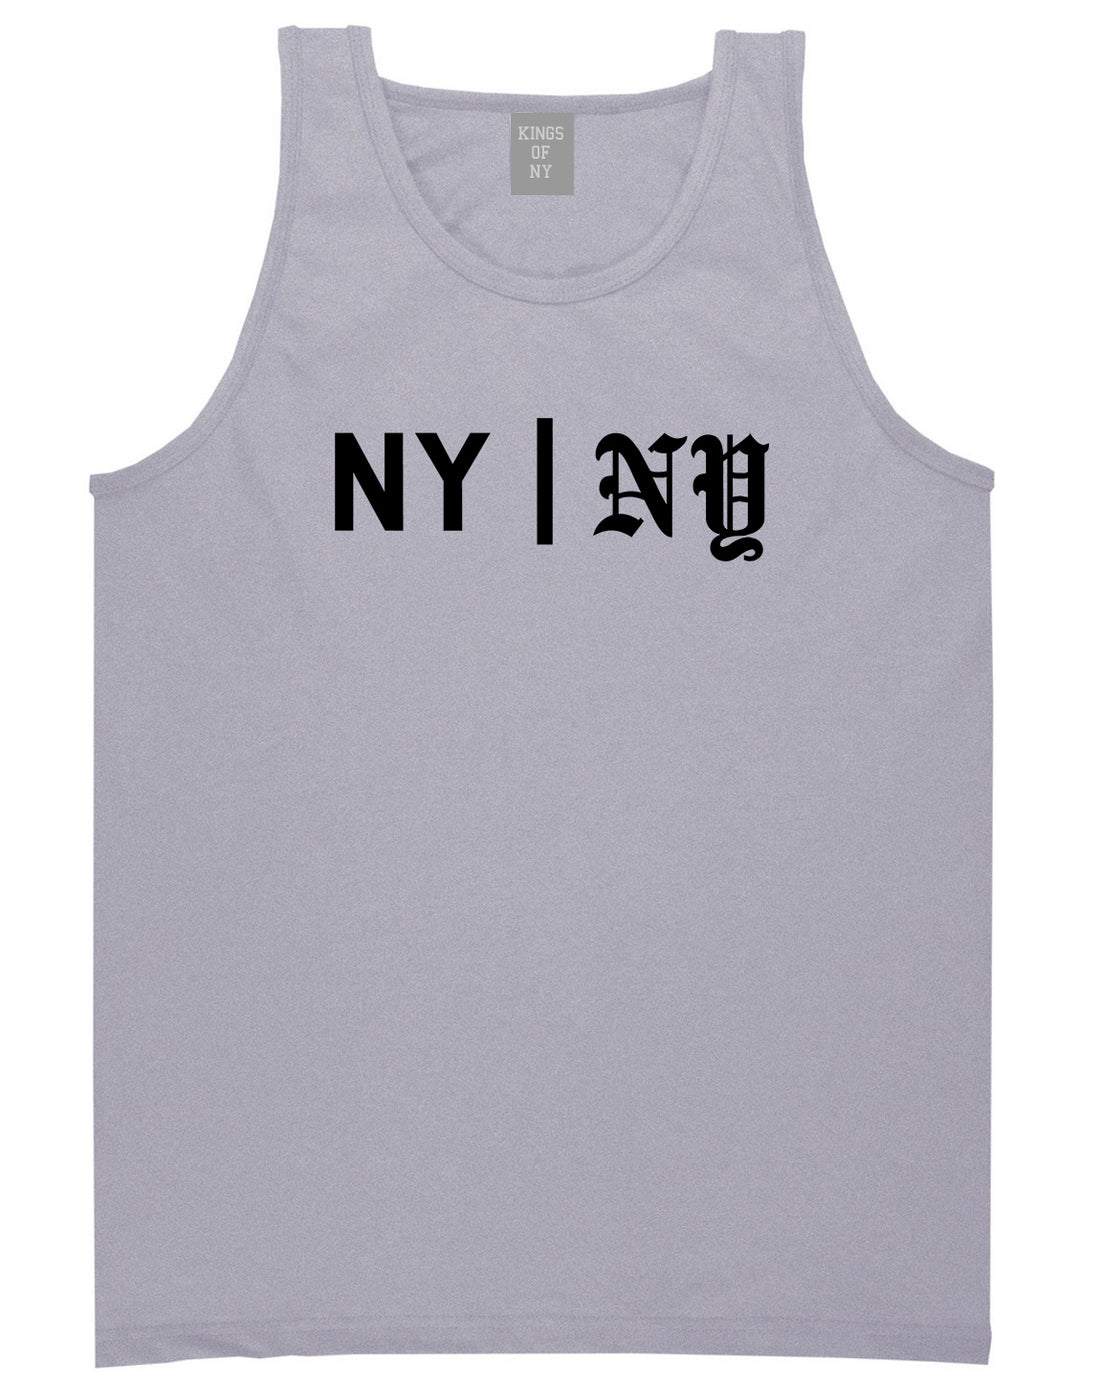 NY vs NY Mens Tank Top Shirt Grey